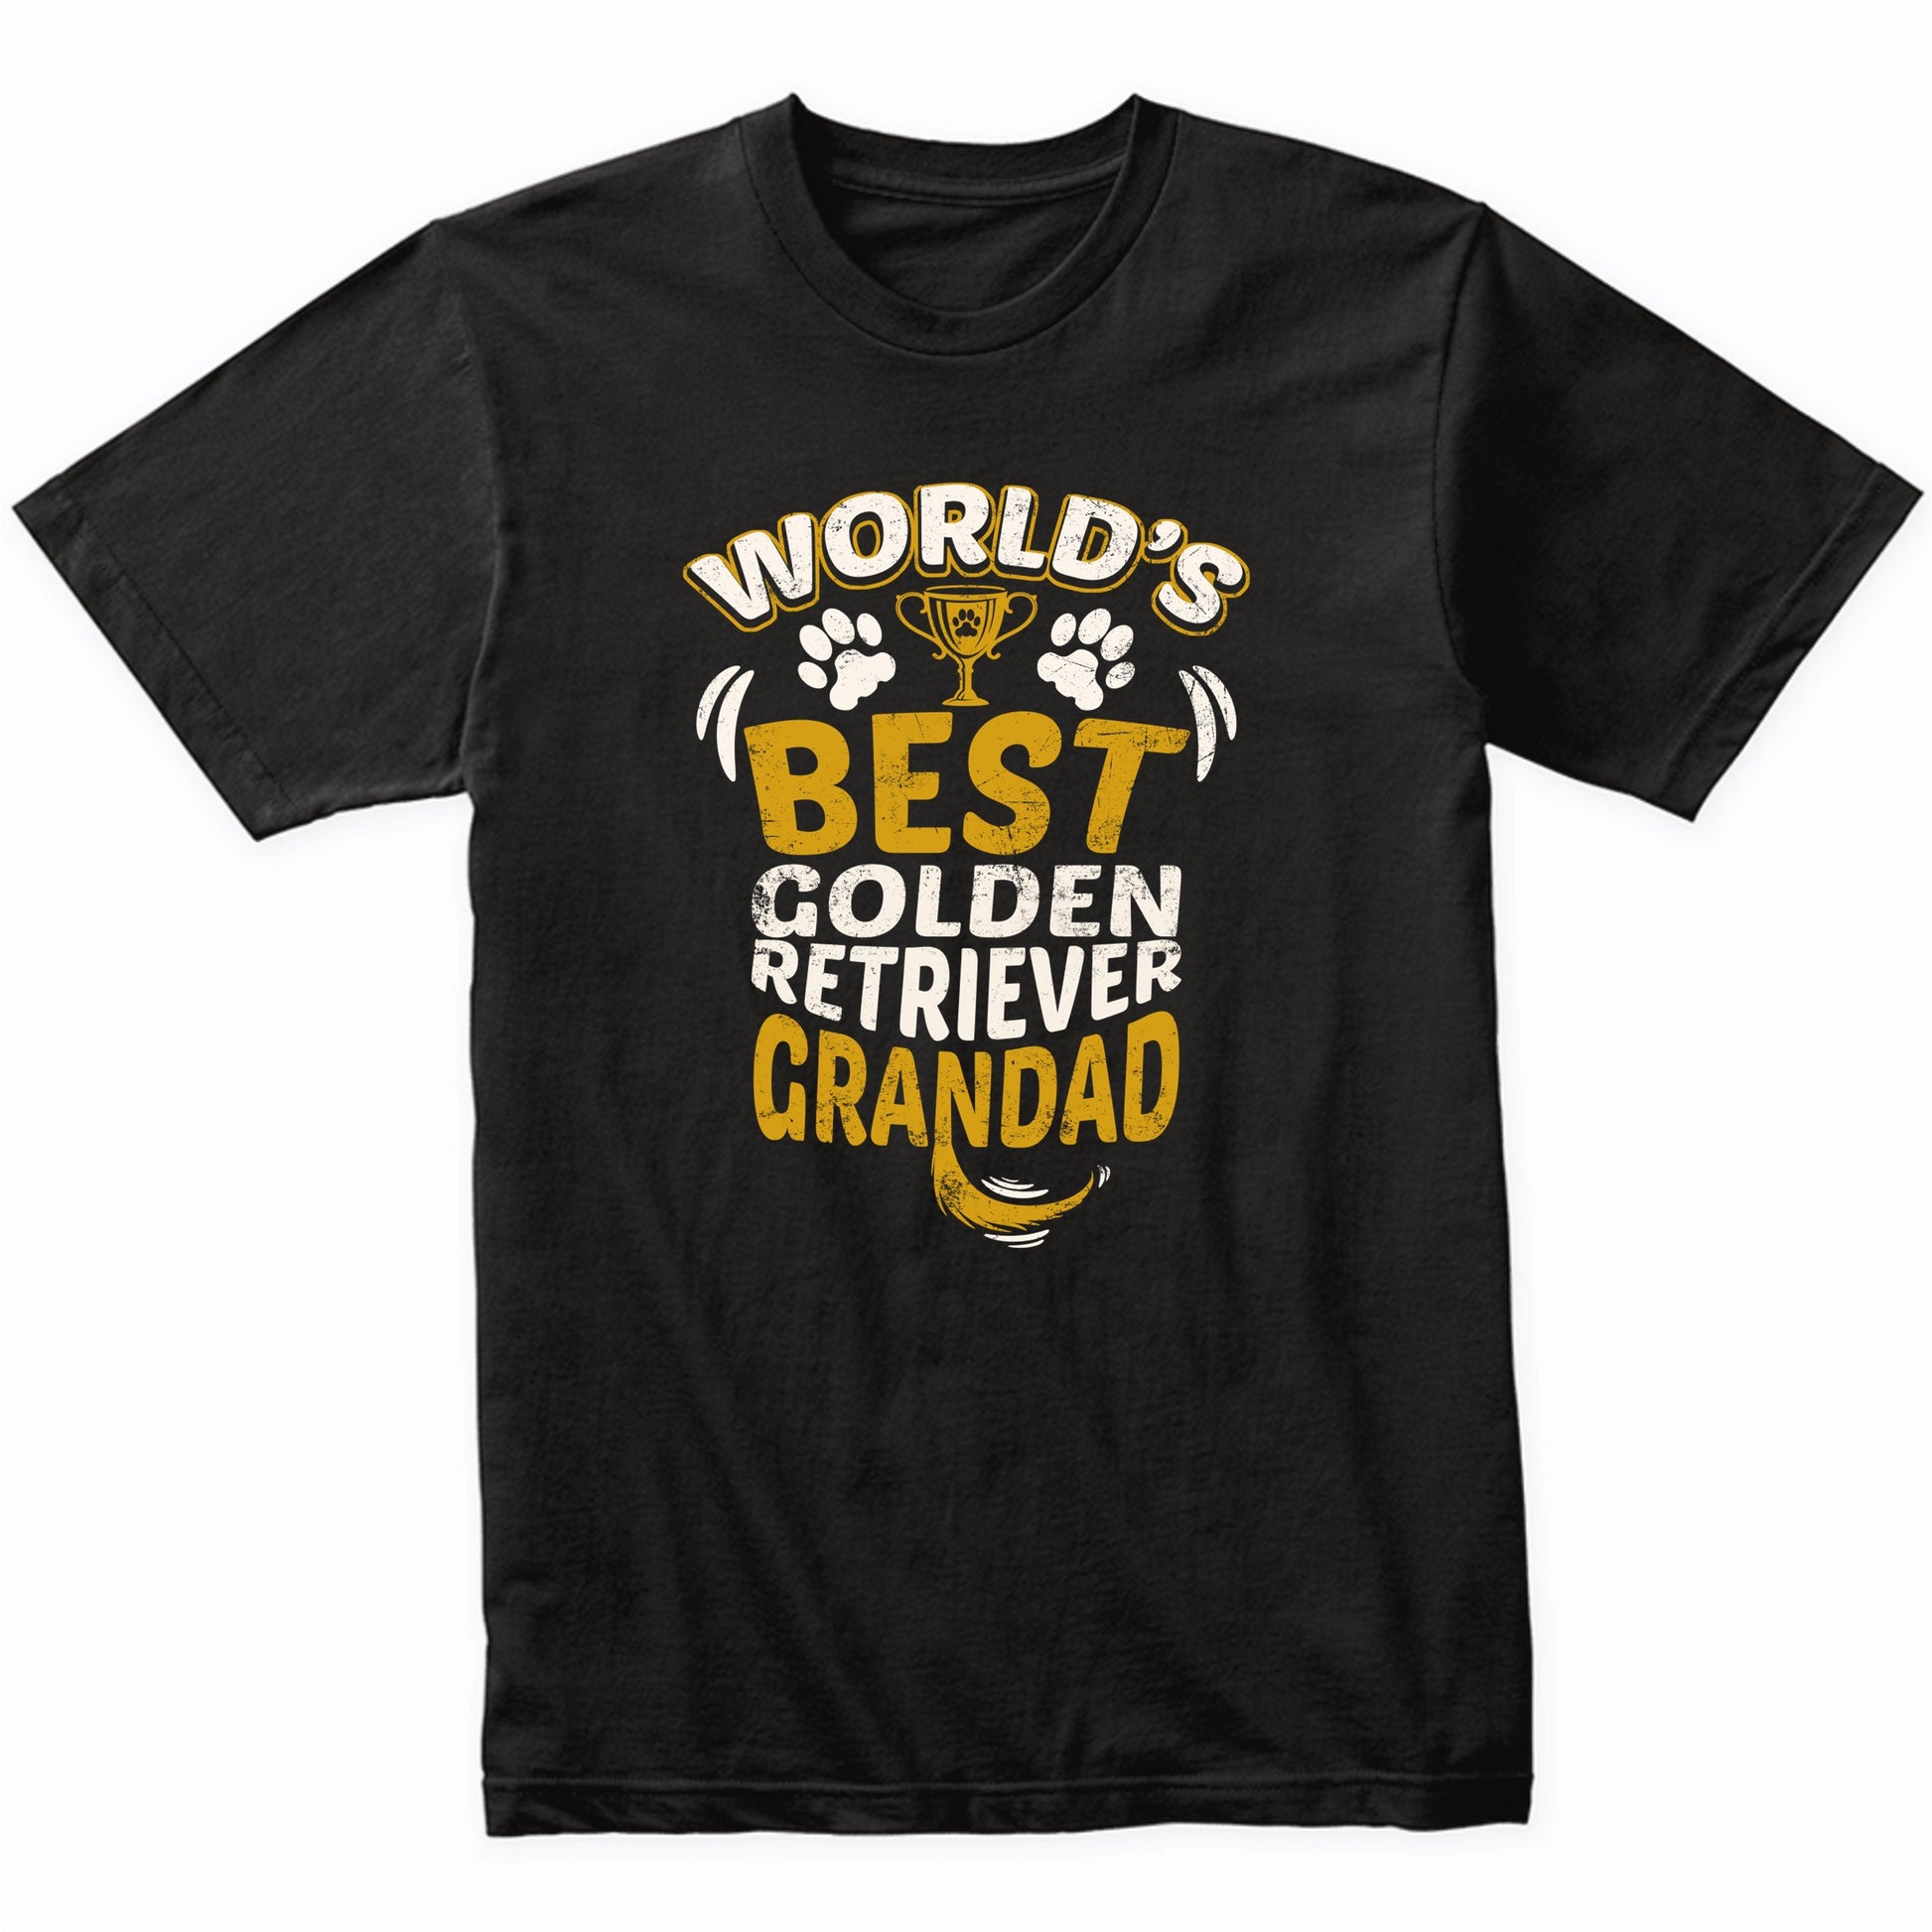 World's Best Golden Retriever Grandad Graphic T-Shirt